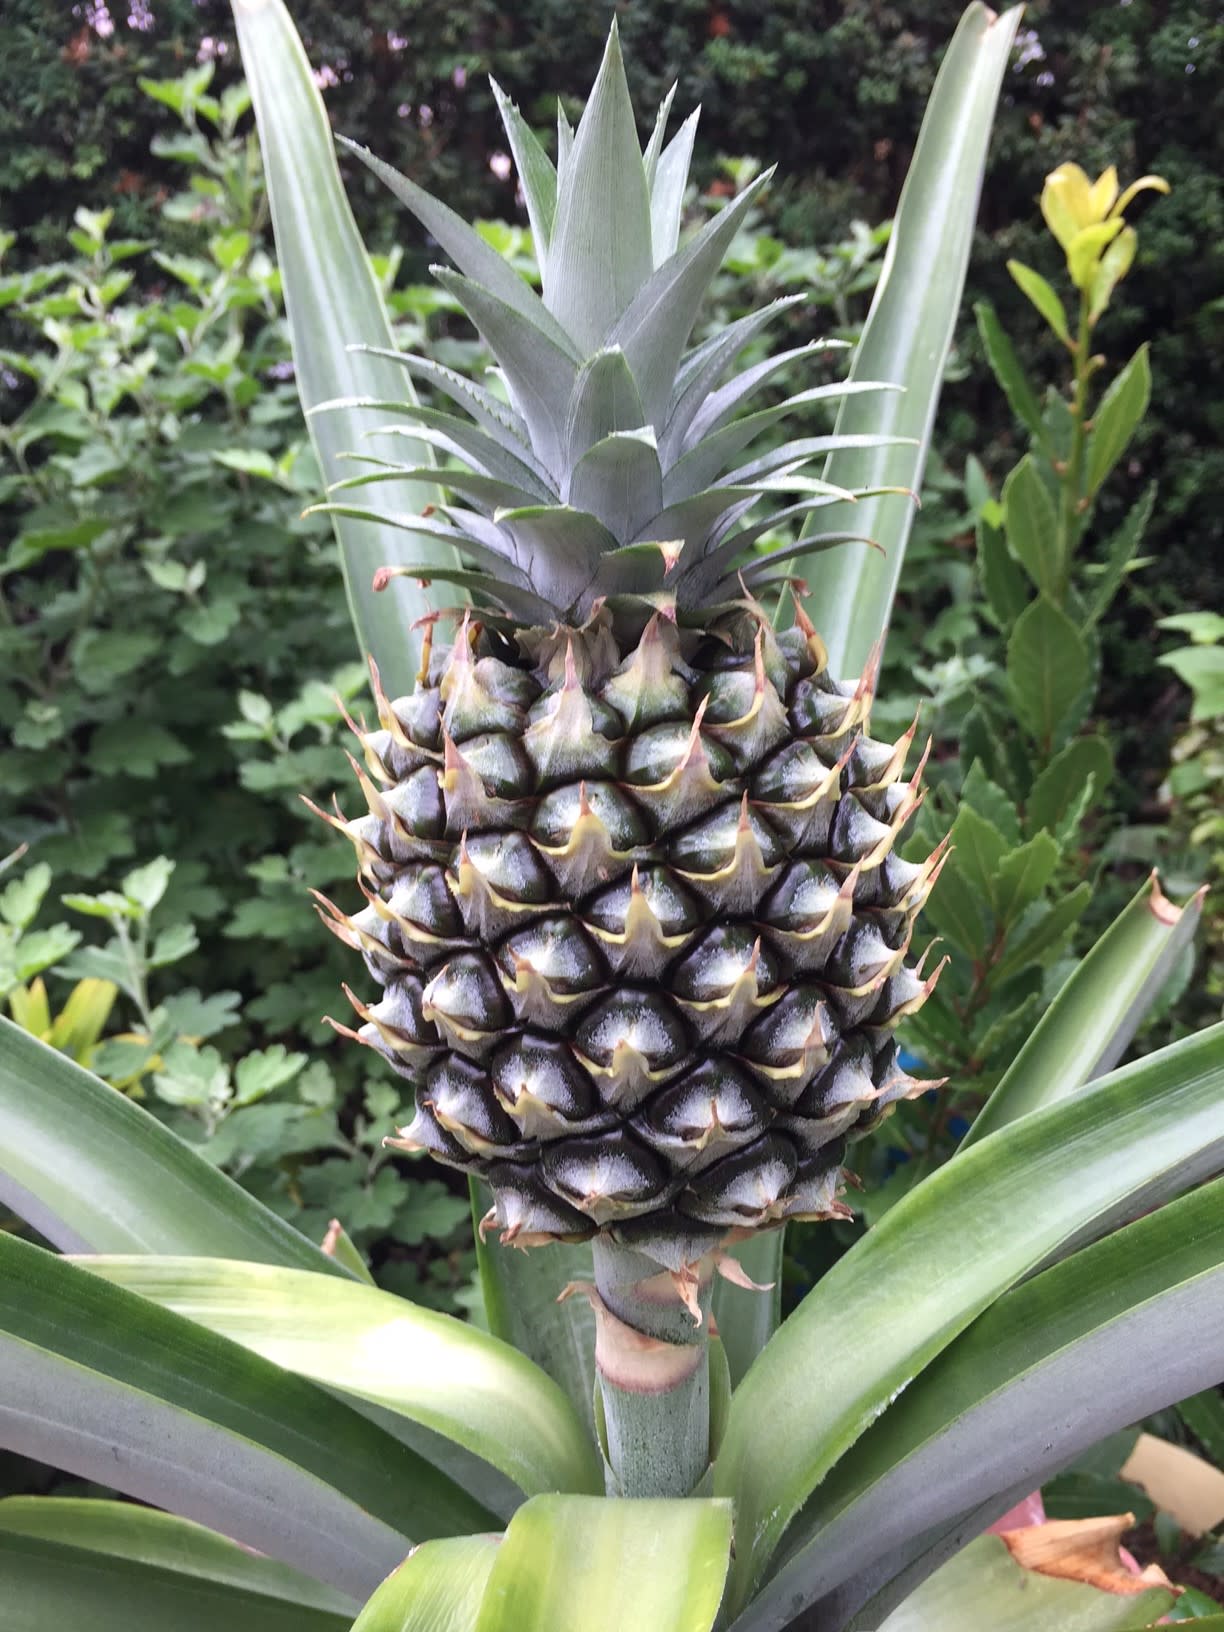 パイナップル栽培 のブログ記事一覧 歓びの種 専業主婦は楽しいぞ